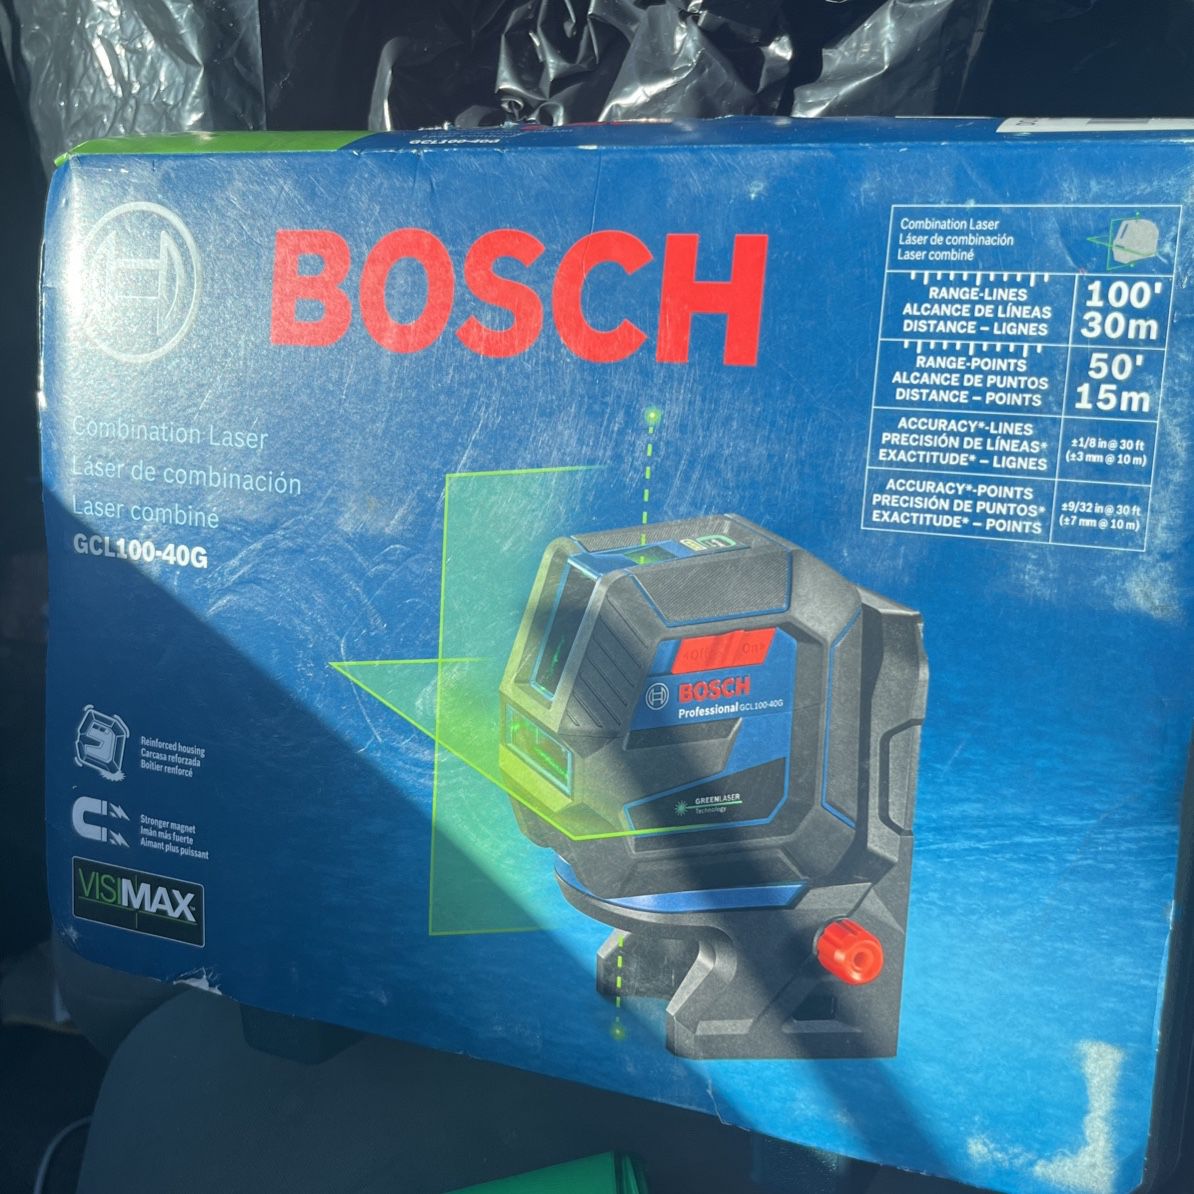 Bosch Laser New In Box